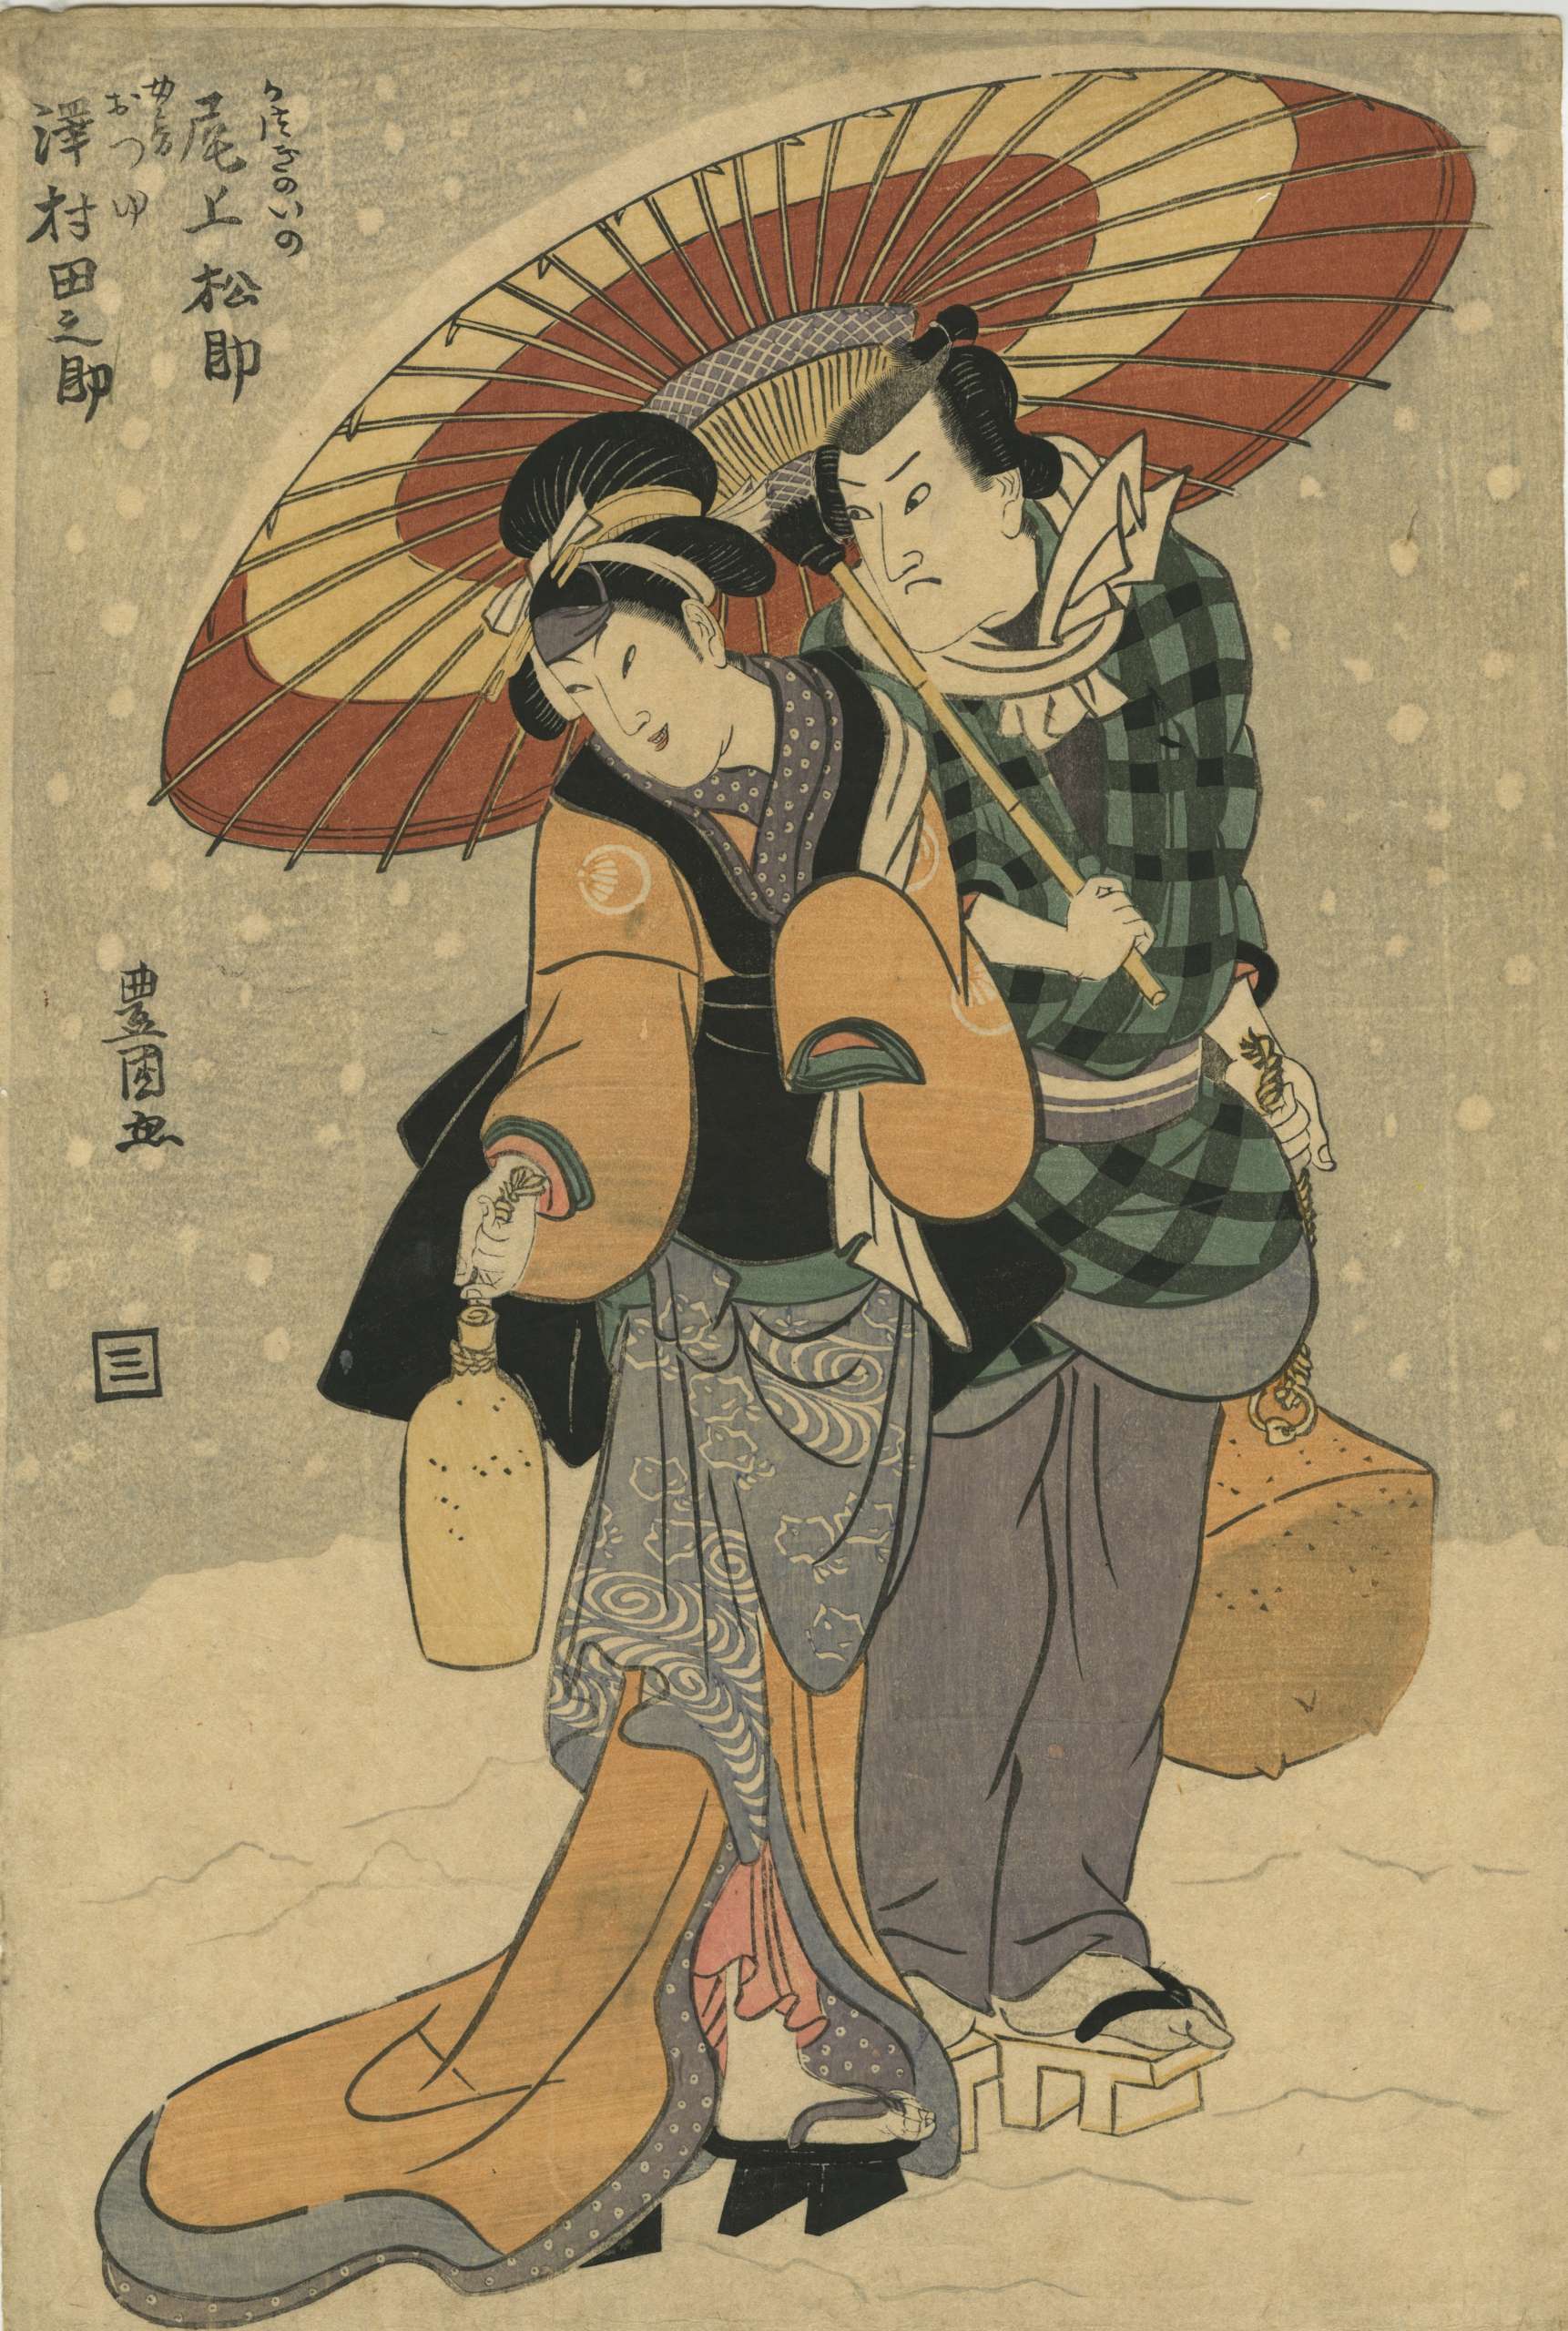 Utagawa Toyokuni I. Onoe Matsusuke II as Katsugiino and Sawamura Tanosuke II as Otsuyu. Circa 1810.